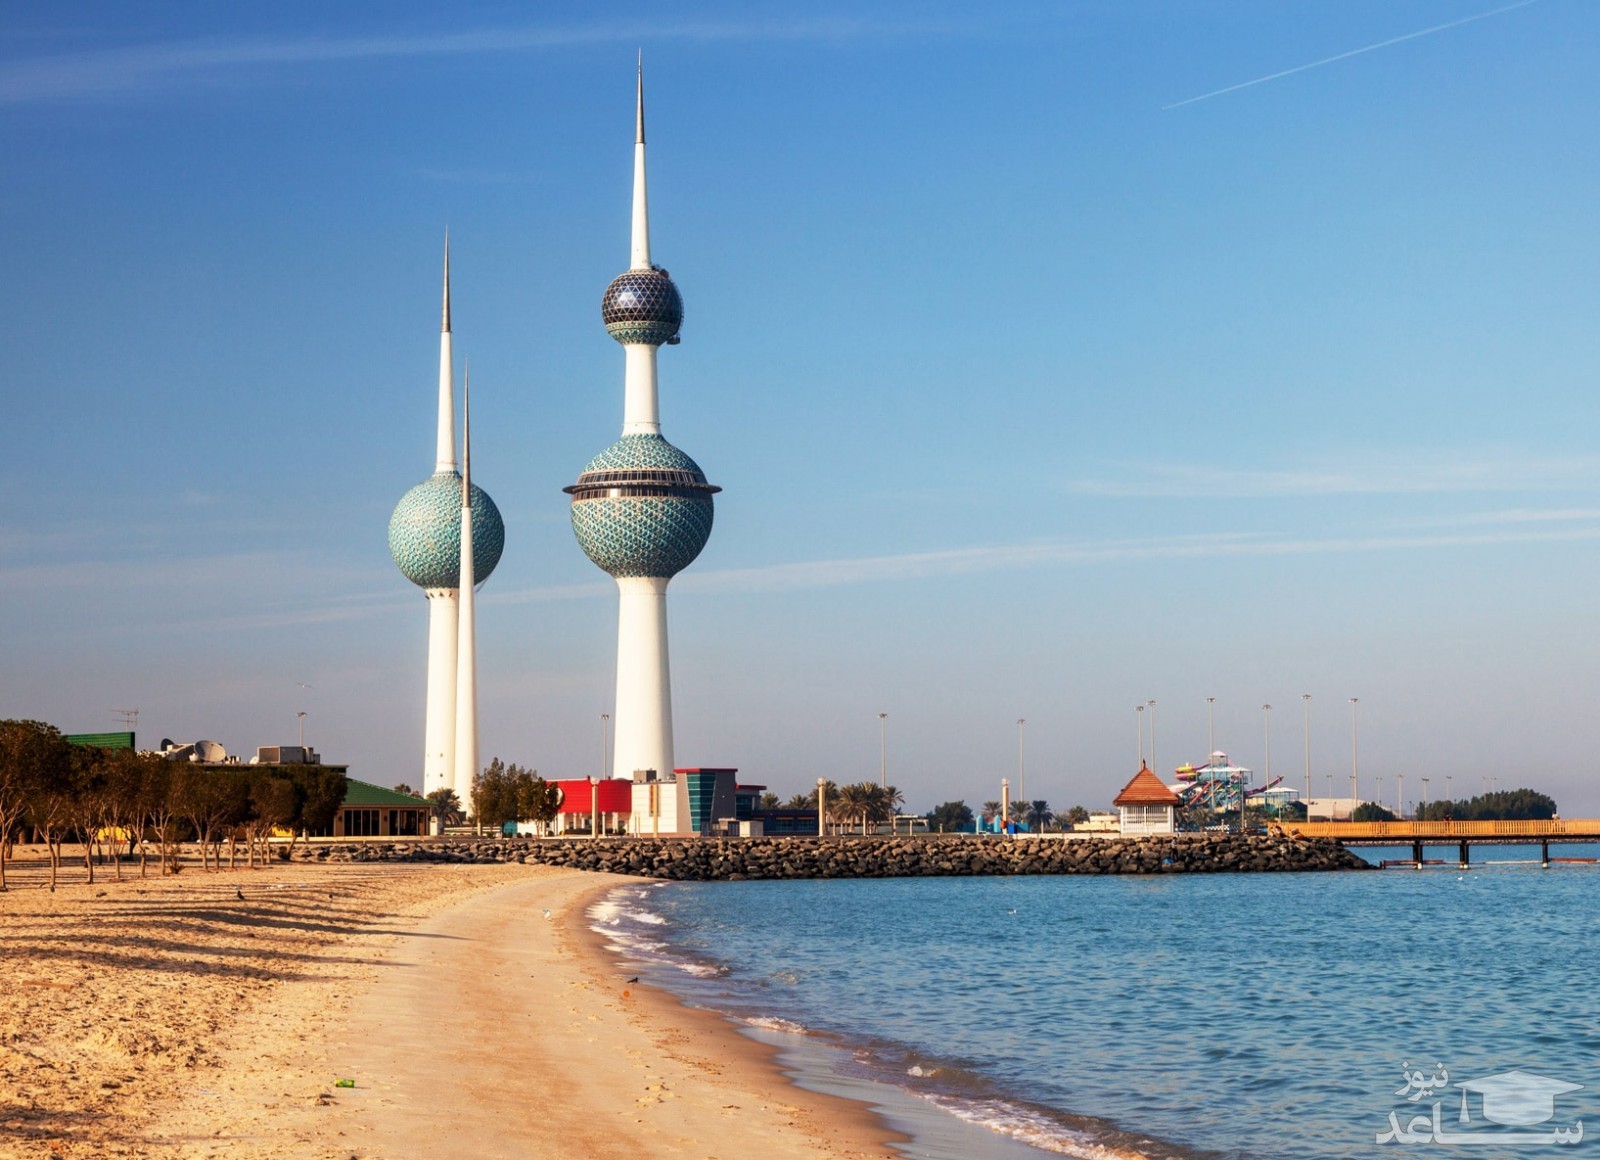 کویت در کدام نقطه از جهان زیبا واقع شده و جاذبه های مهم توریستی آن کدامند؟